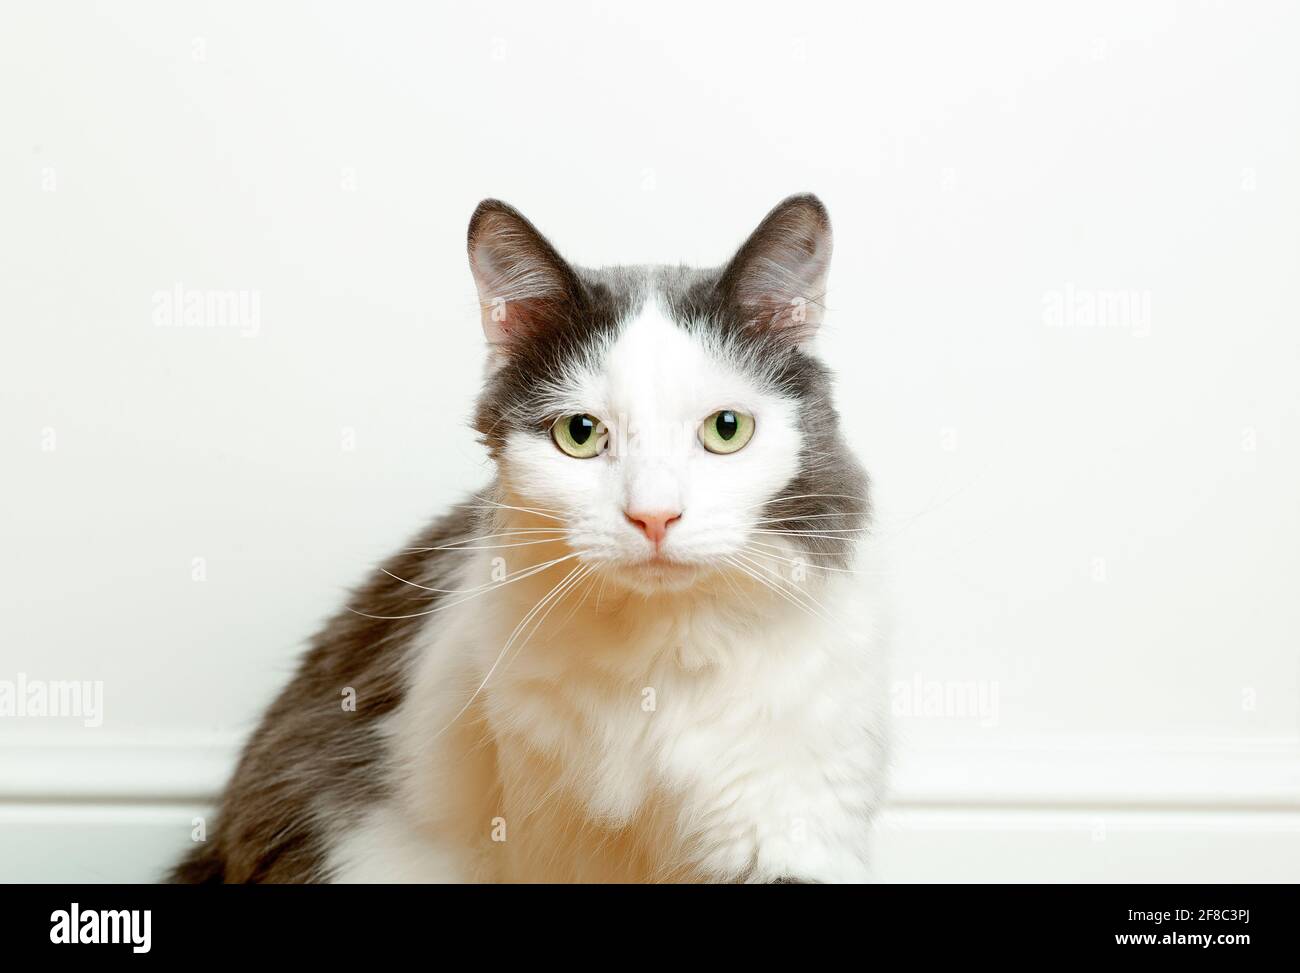 Ritratto di un simpatico gatto domestico sullo sfondo della bandiera di una parete bianca vuota. Lo sguardo e gli occhi di un gatto grazioso. Foto di alta qualità Foto Stock